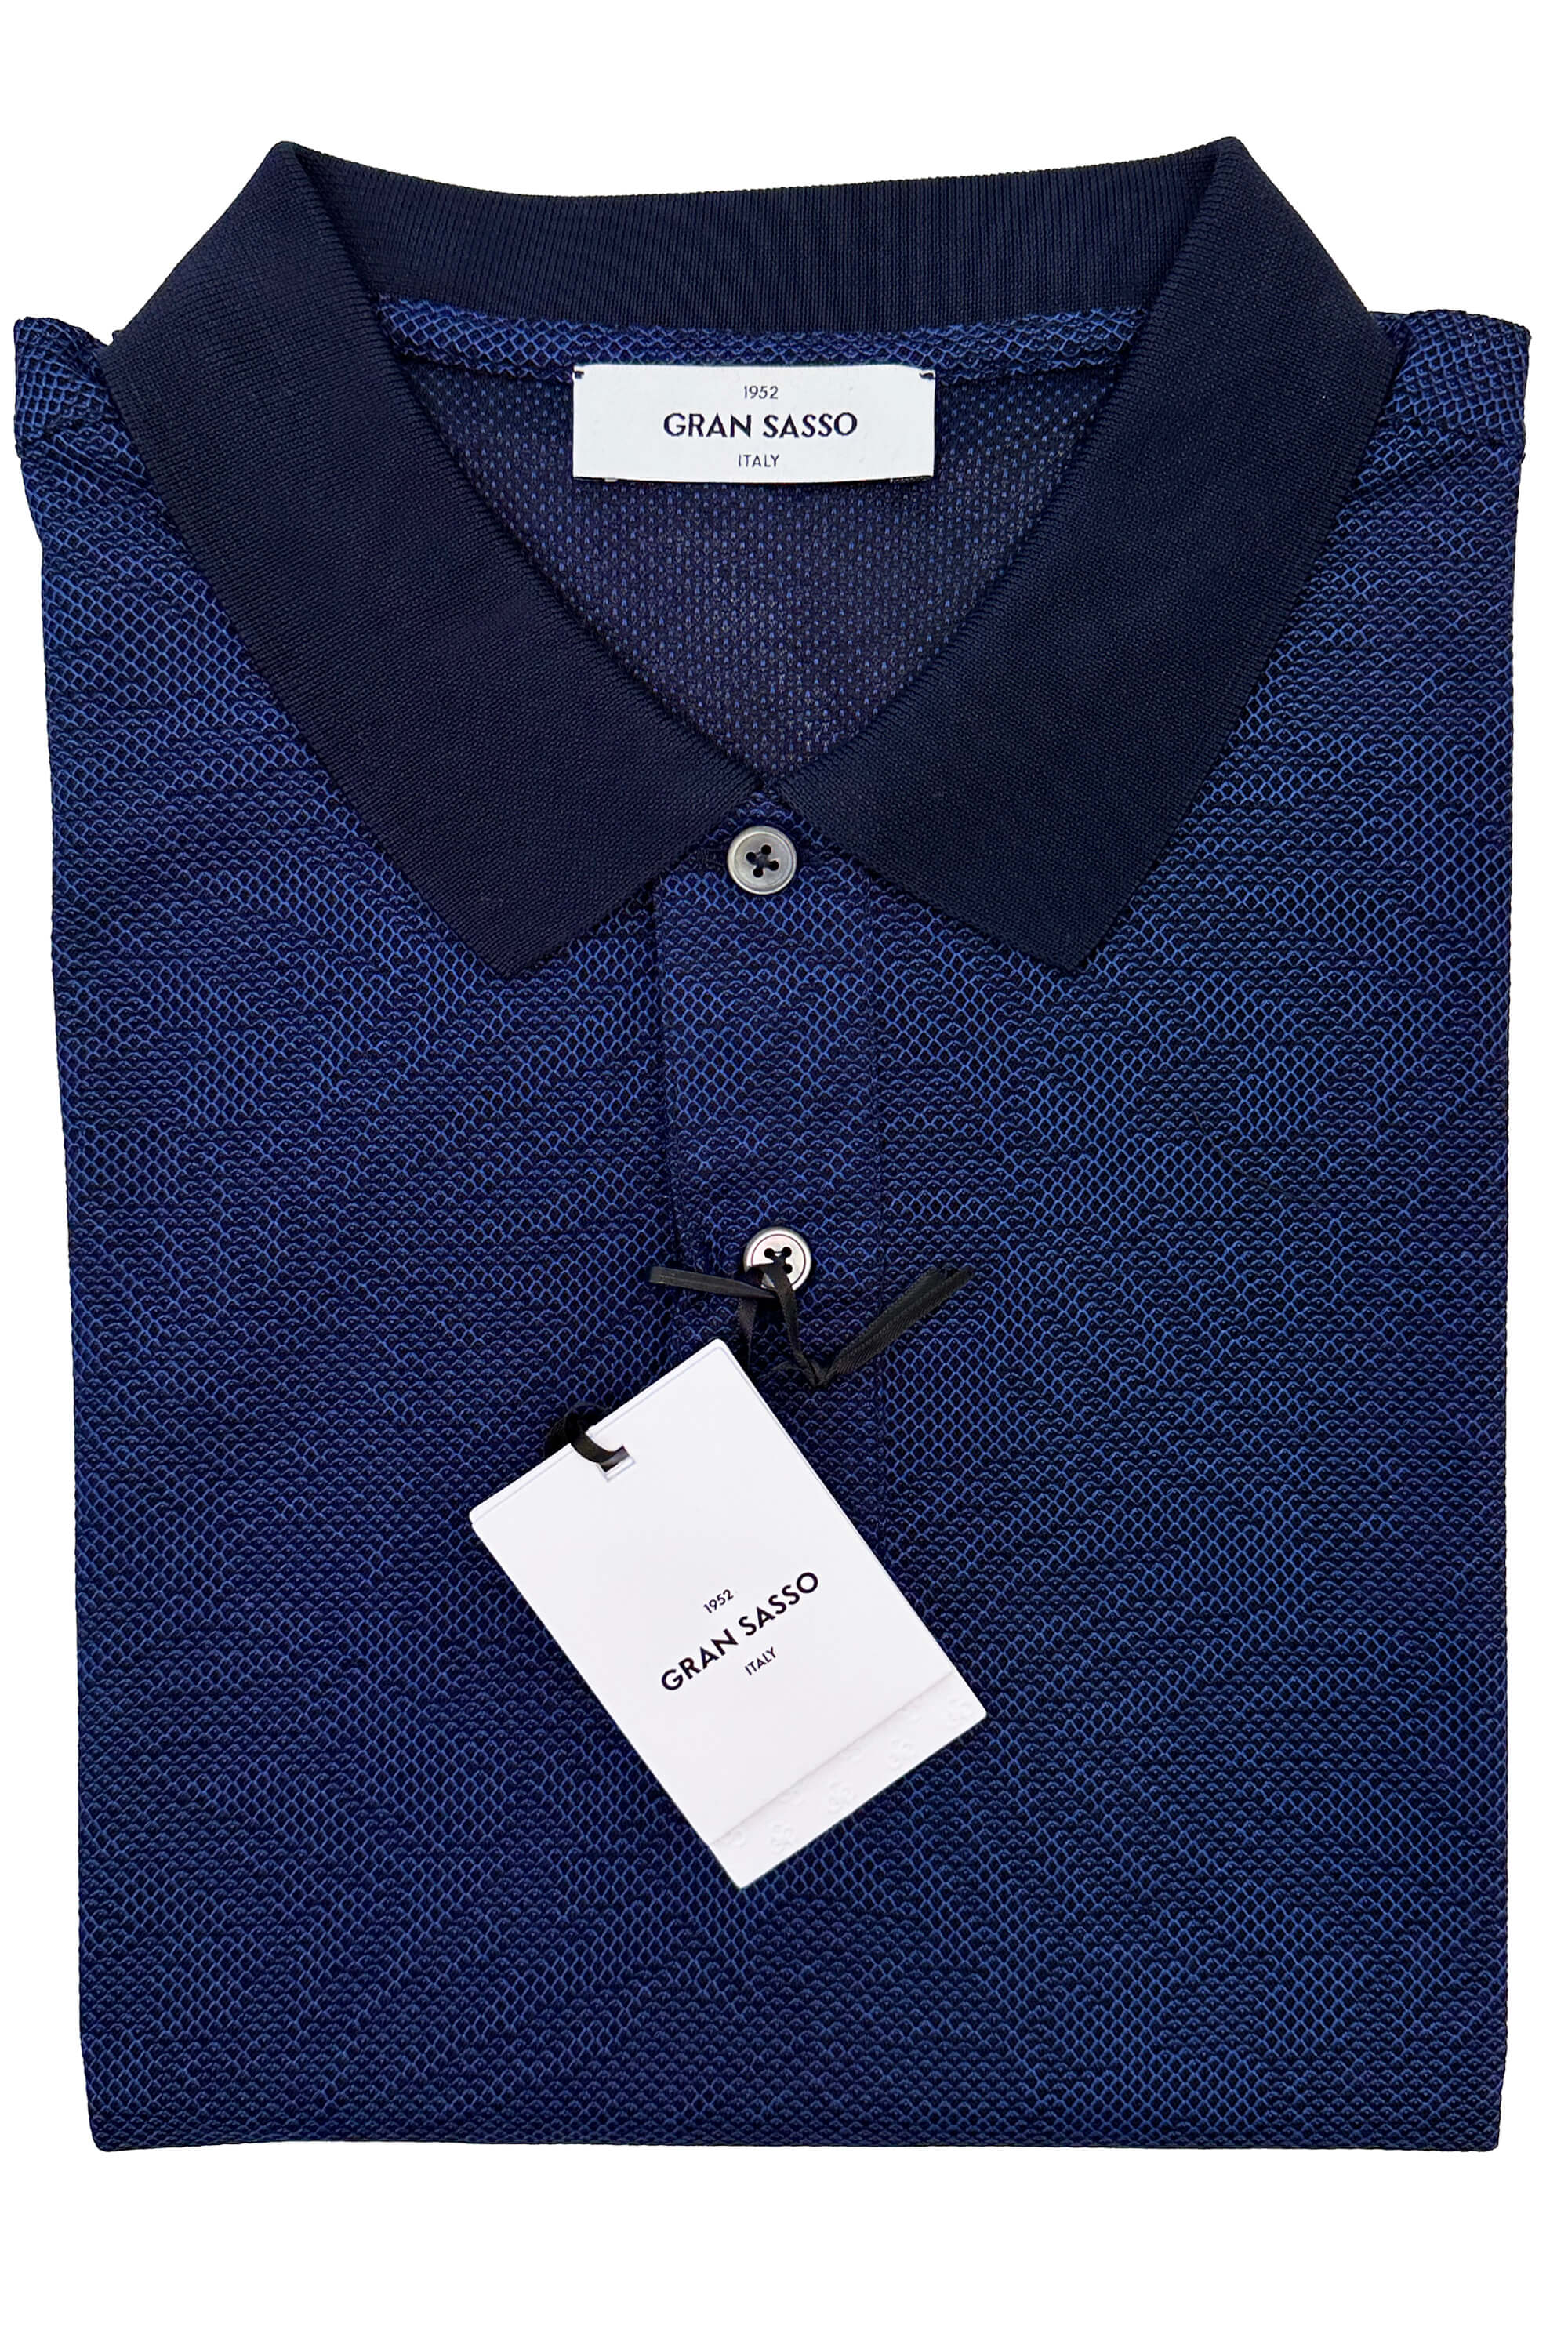 Gran Sasso Knit Print Leaf Polo Dark Blue